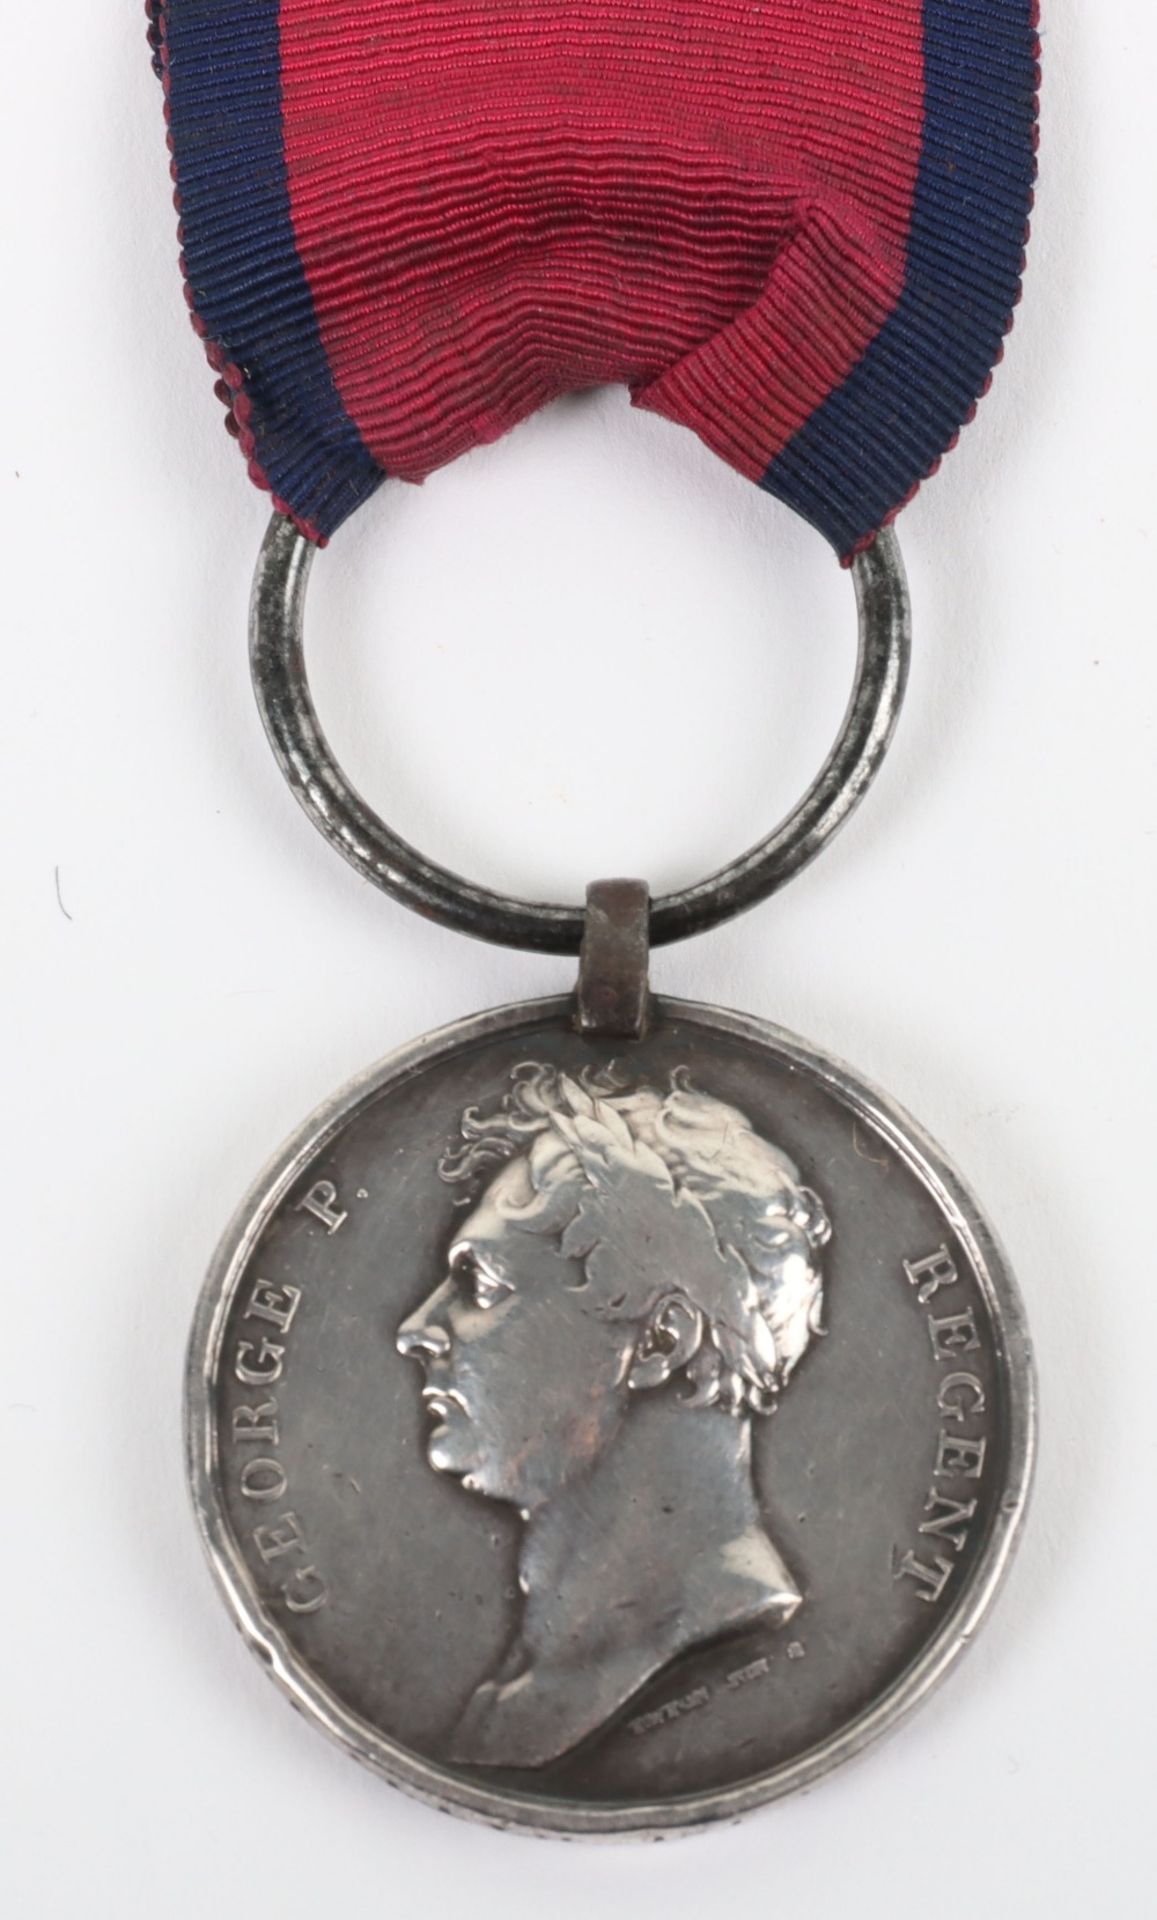 British 1815 Waterloo Medal 4th or Kings Own Regiment of Foot